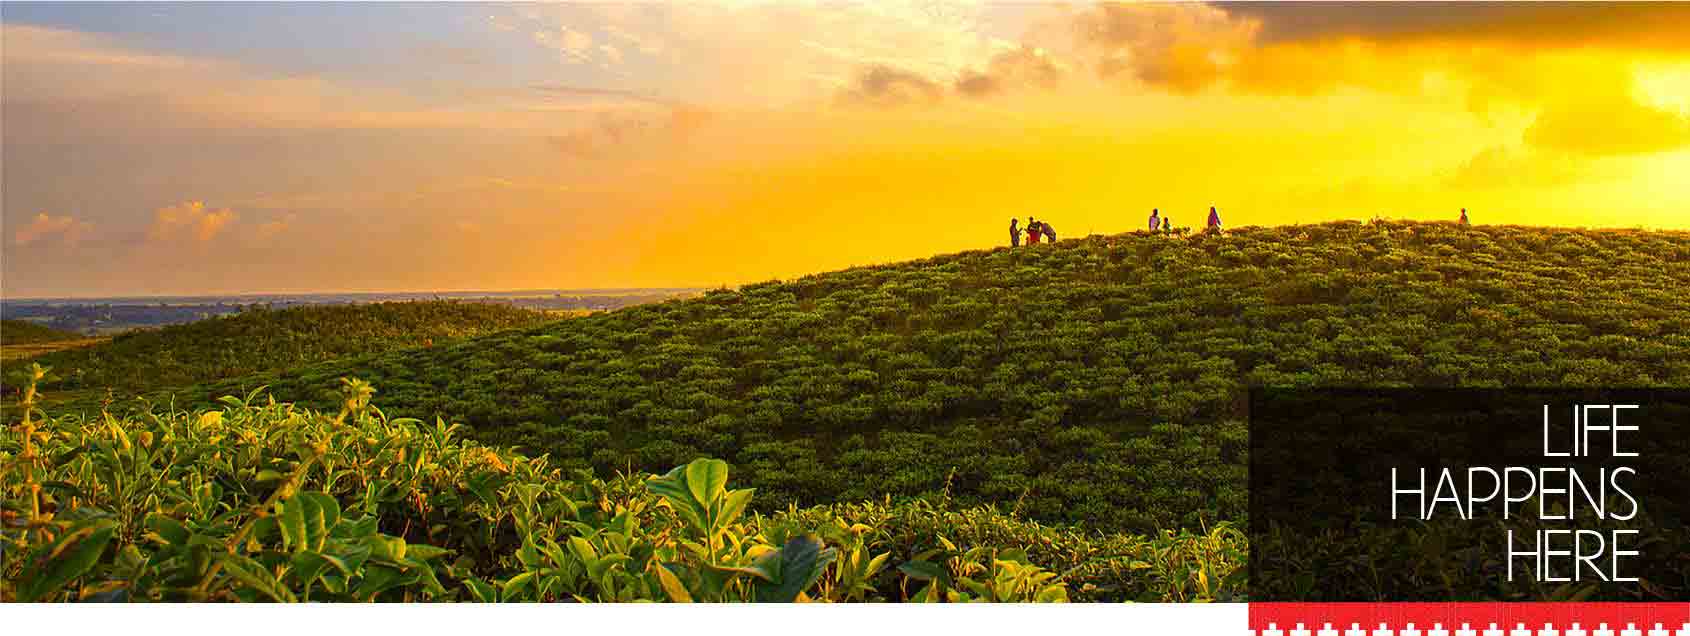 sylhet tea garden